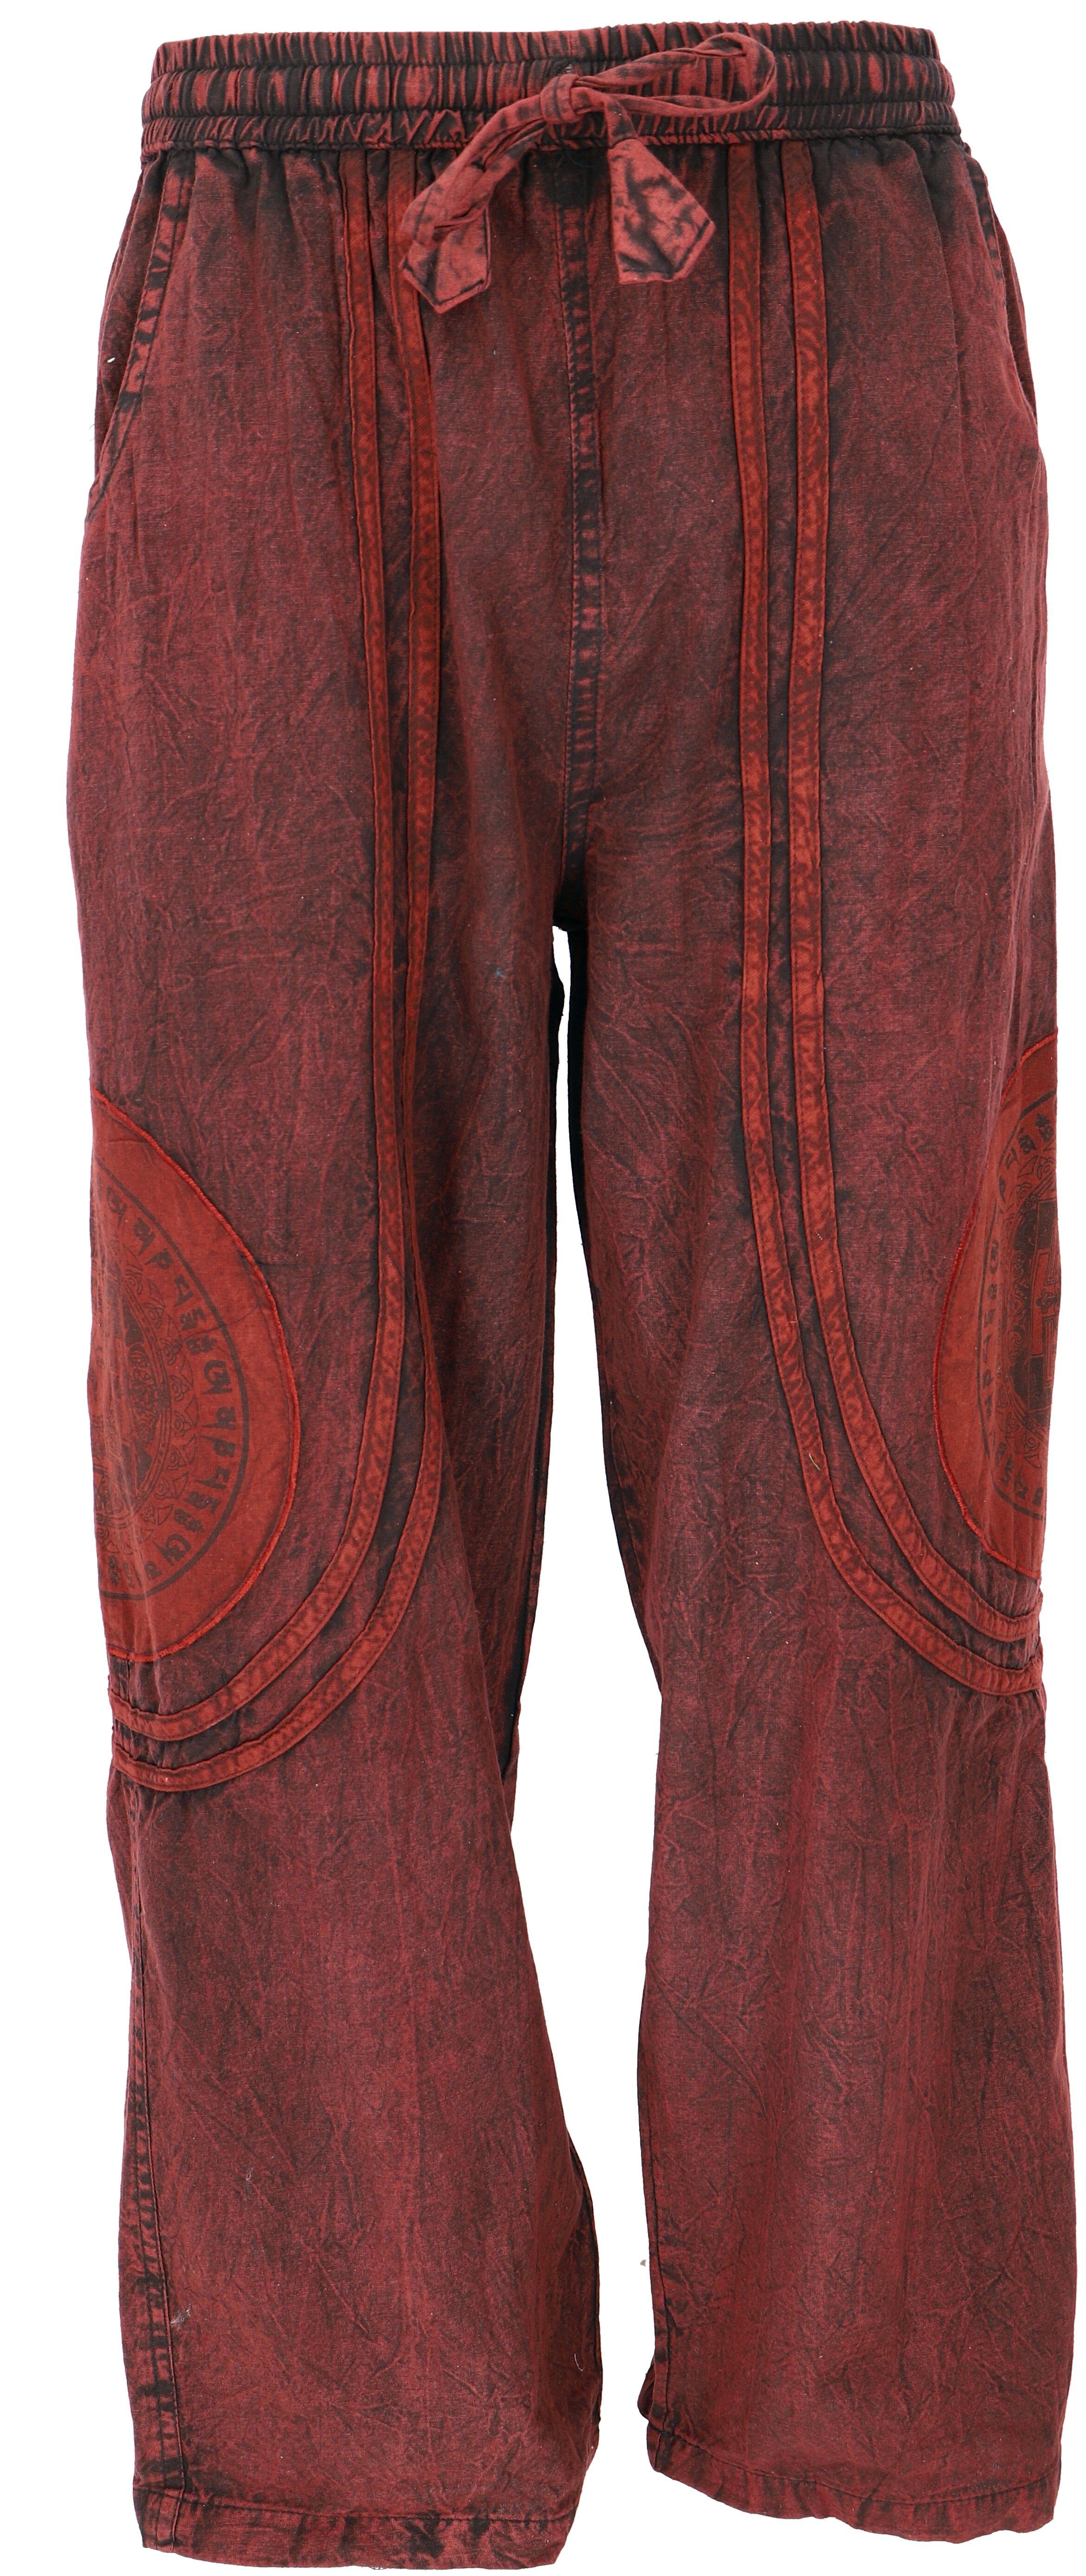 Bekleidung Yogahose, Retro, Relaxhose alternative Style, Ethno Guru-Shop Stonewash Baumwoll-Goa-Hose.. Unisex rot